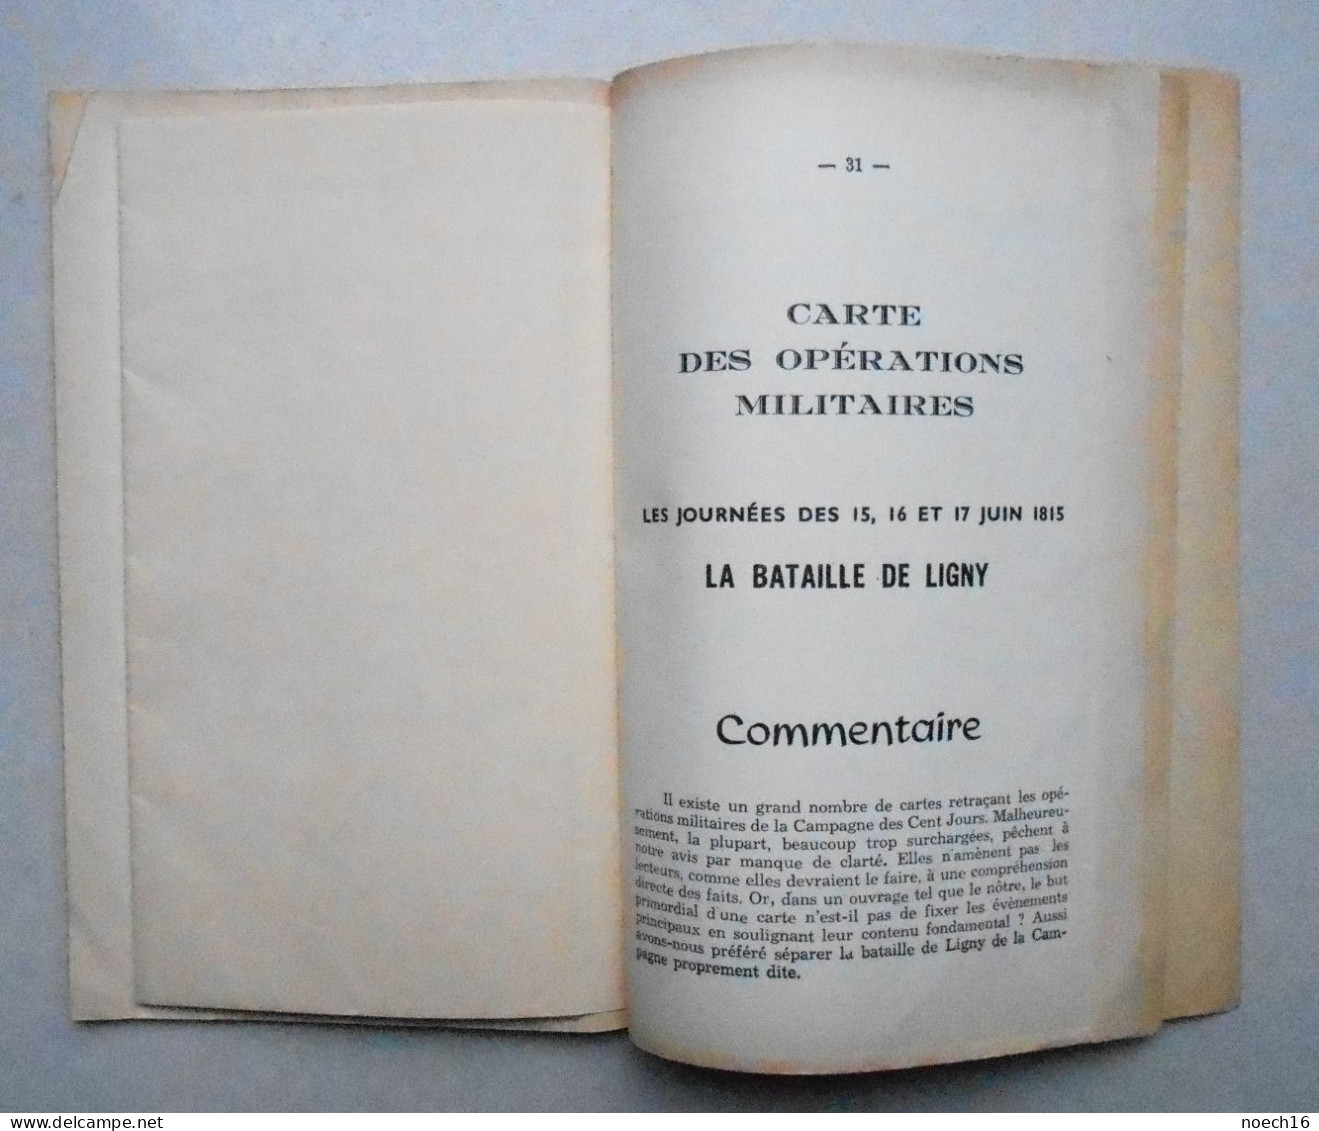 1958 Fleurus et l'Empereur Napoléon 1er avec Carte des Opérations militaires. La Bataille de Ligny.